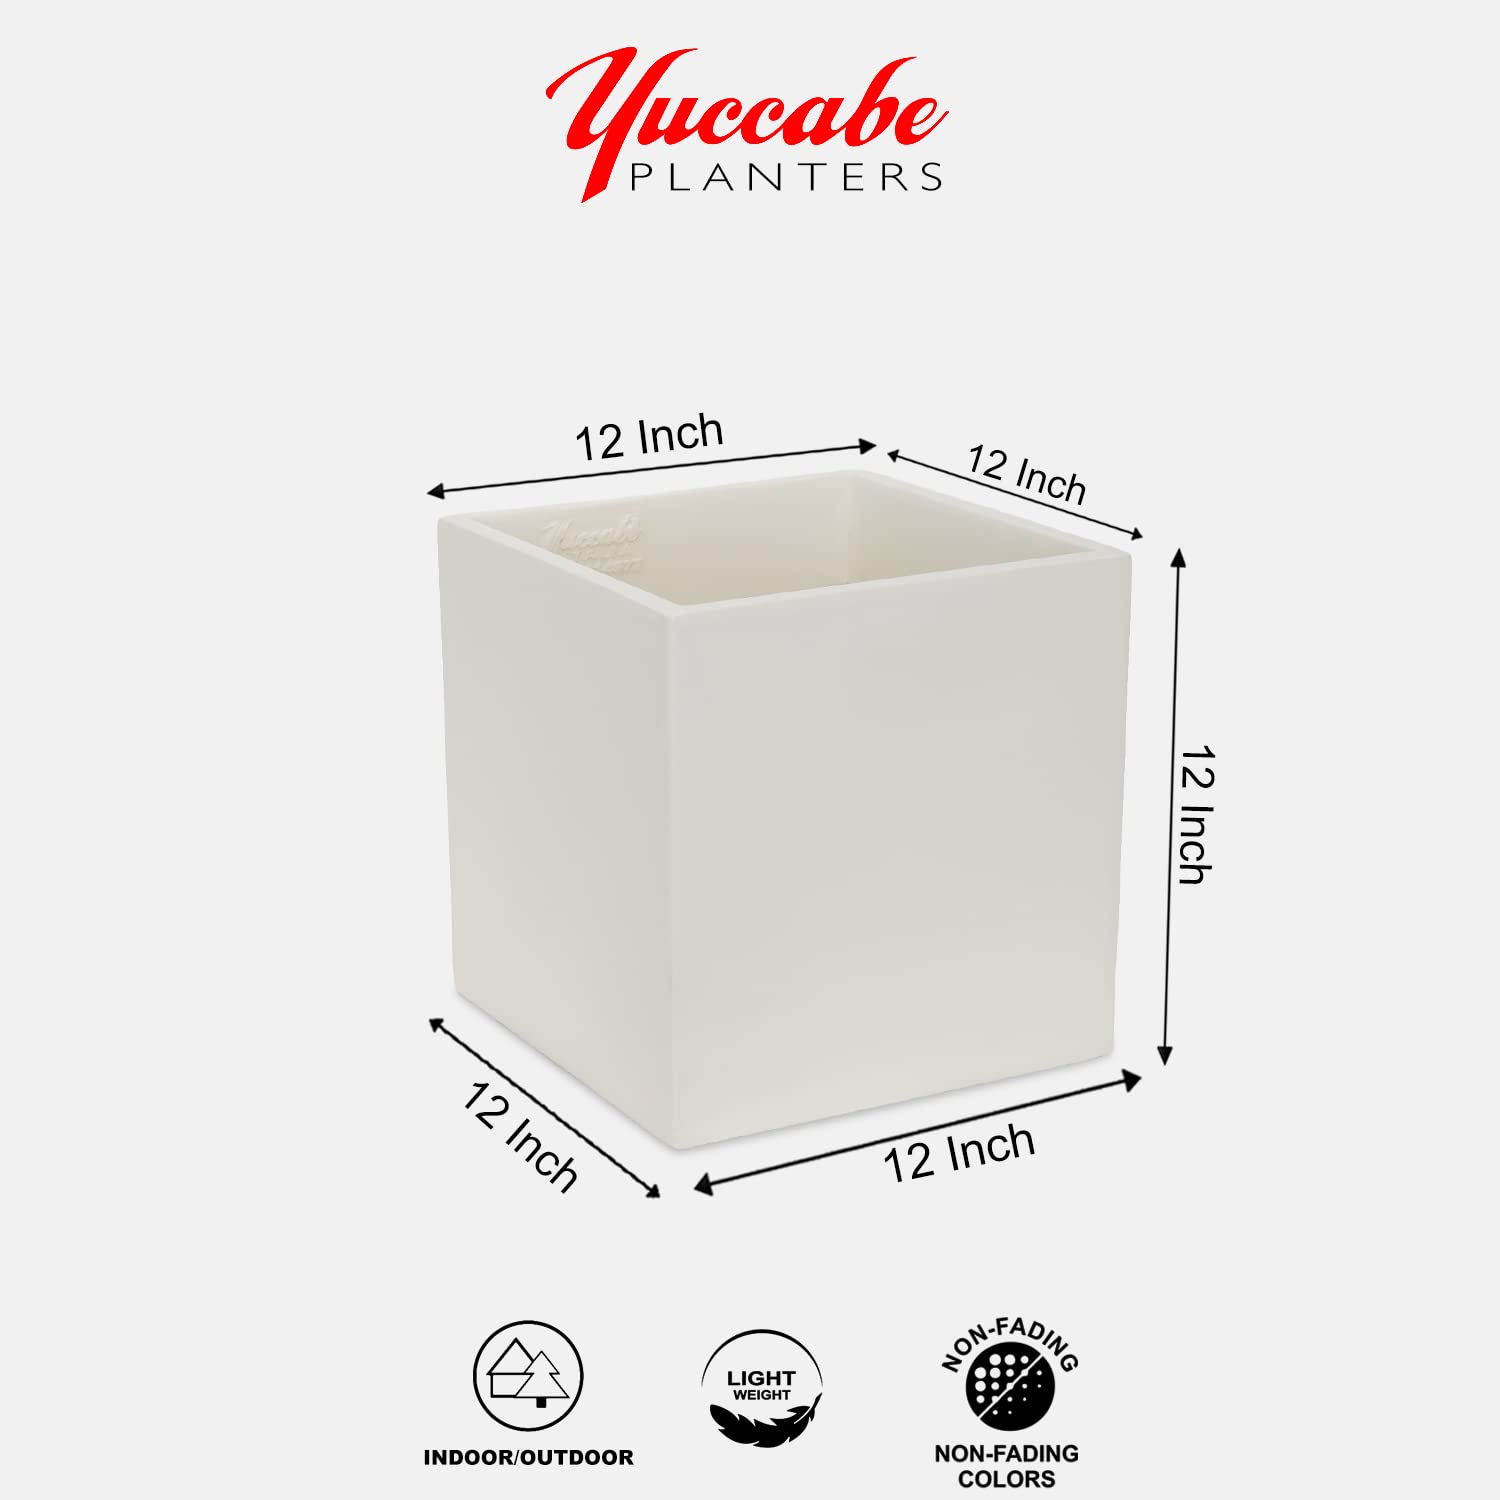 yuccabe italia cube 12 inches planters